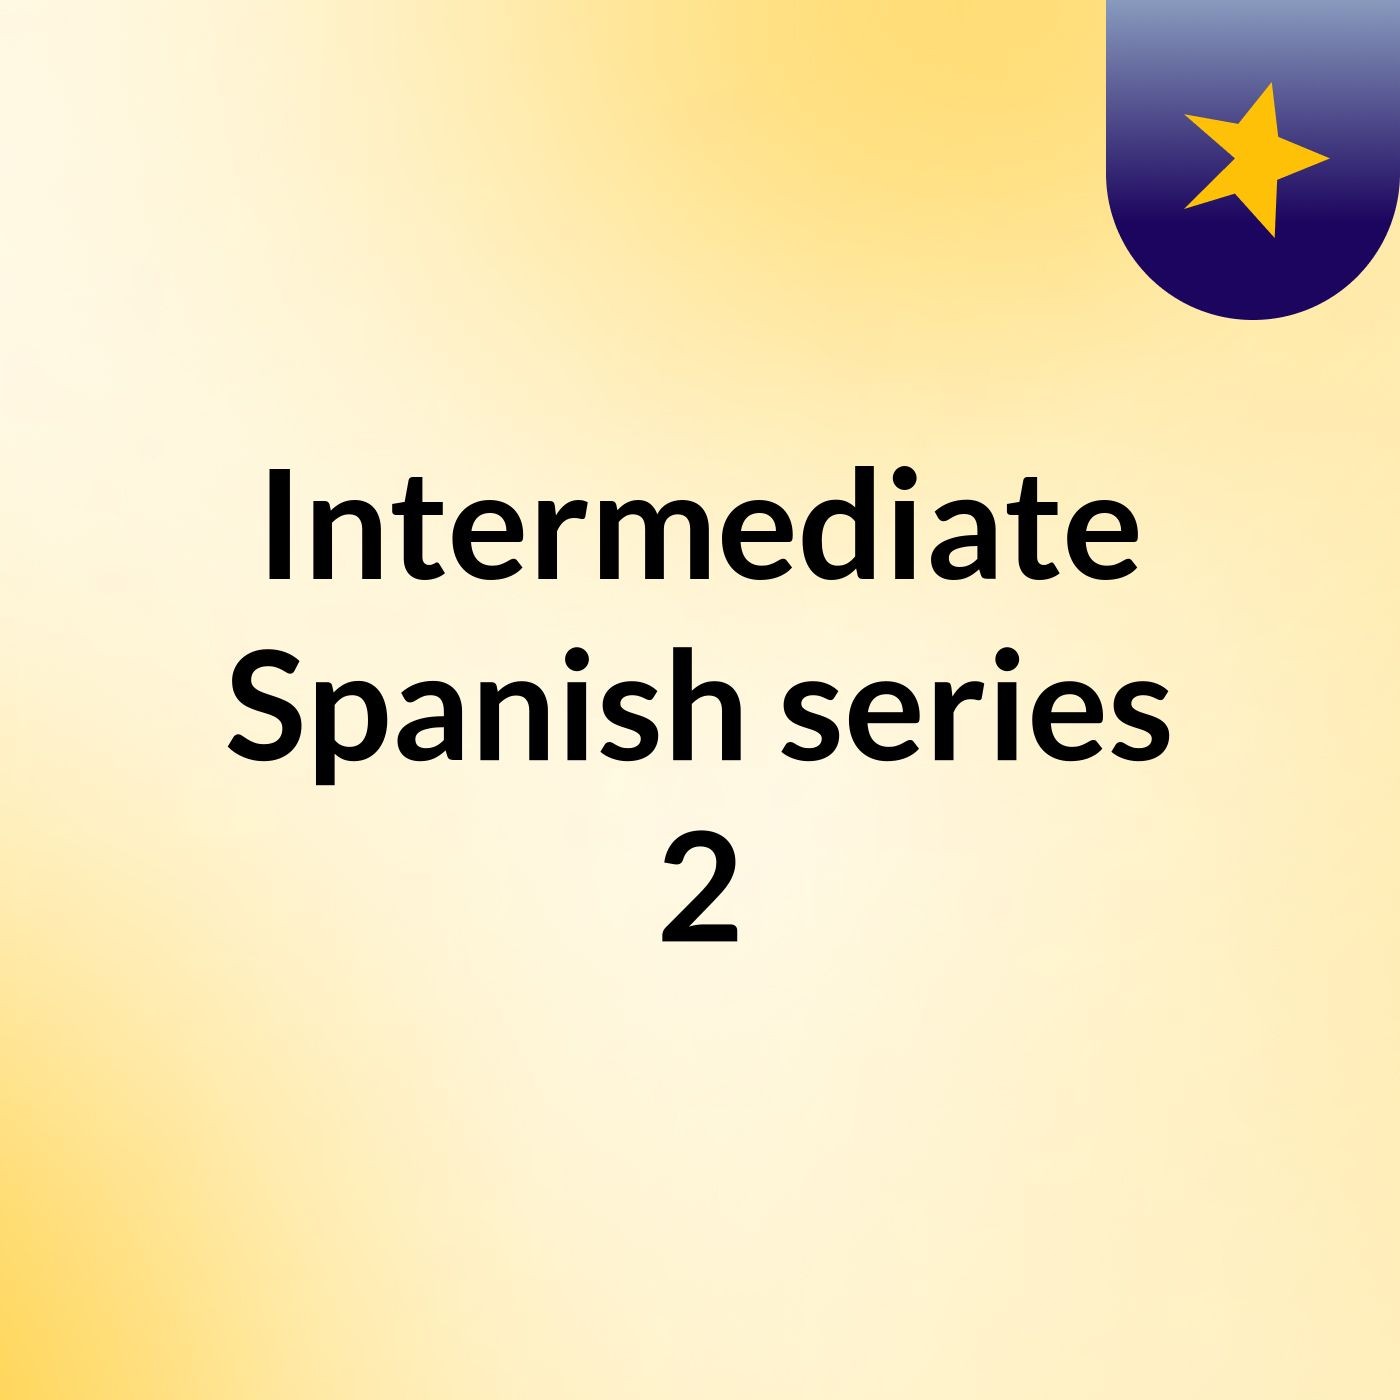 Intermediate Spanish series 2